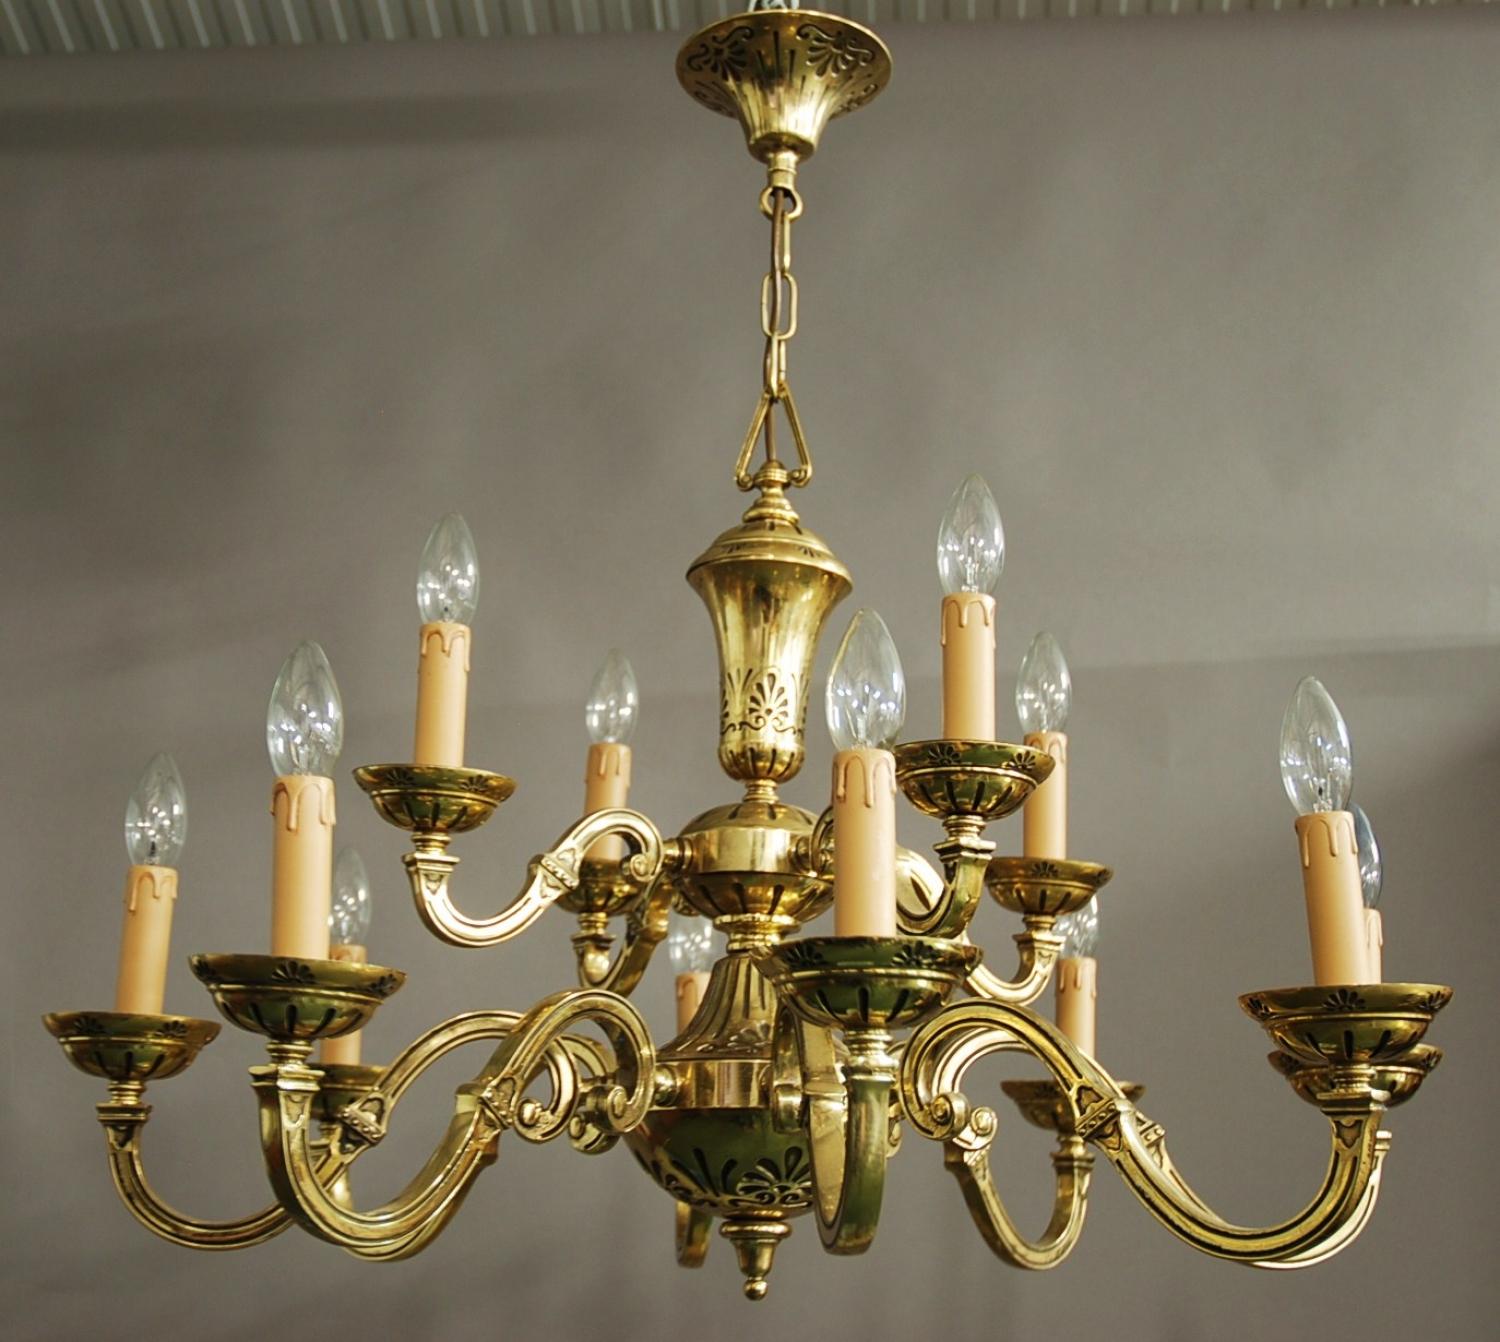 Decorative twelve branch brass chandelier